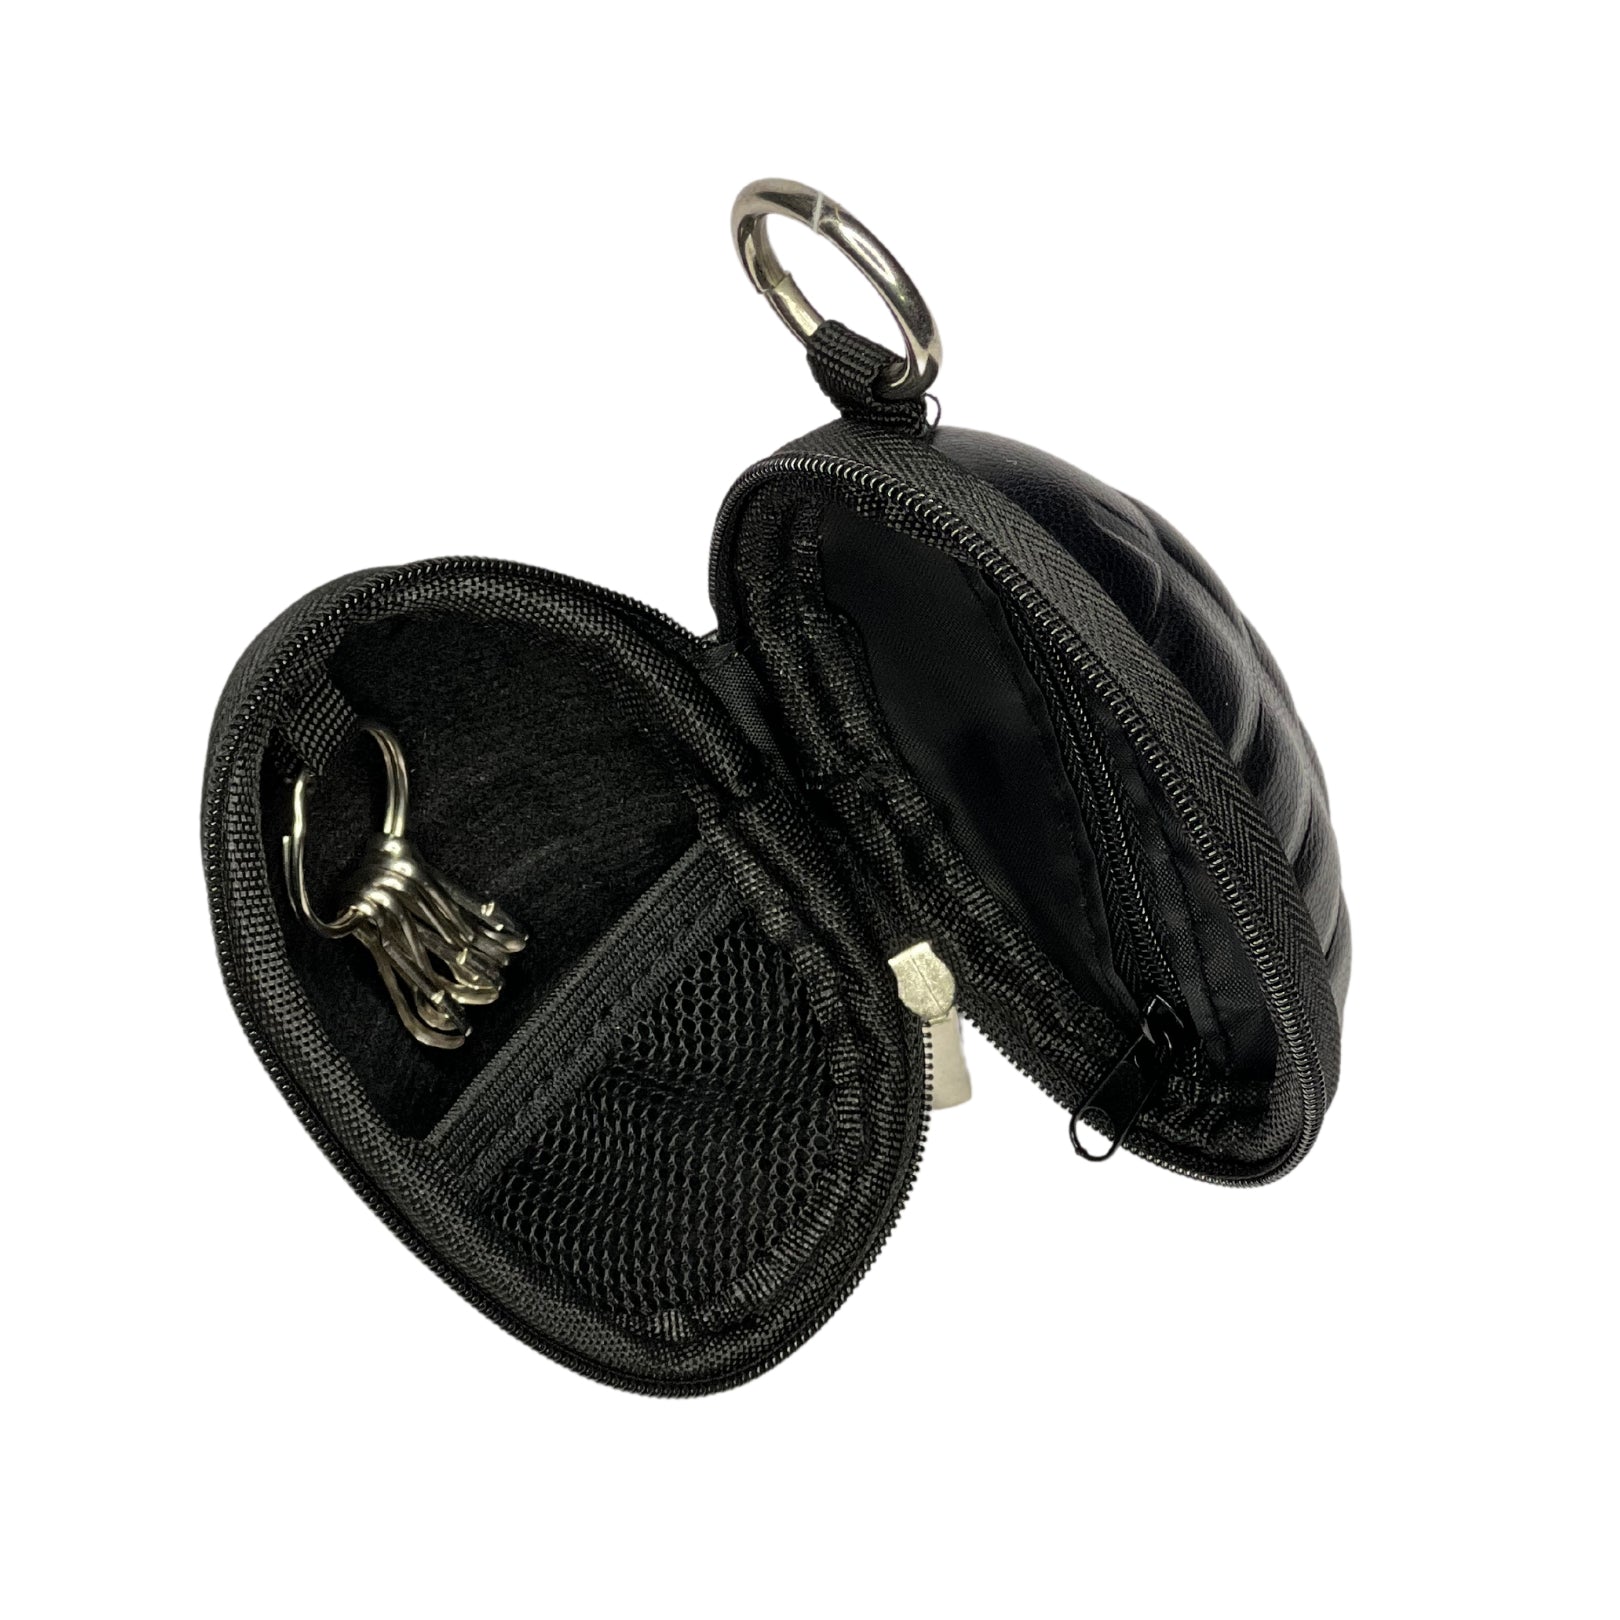 Grenade Shape EarPods Case - Grenade Shape Keychain Holder